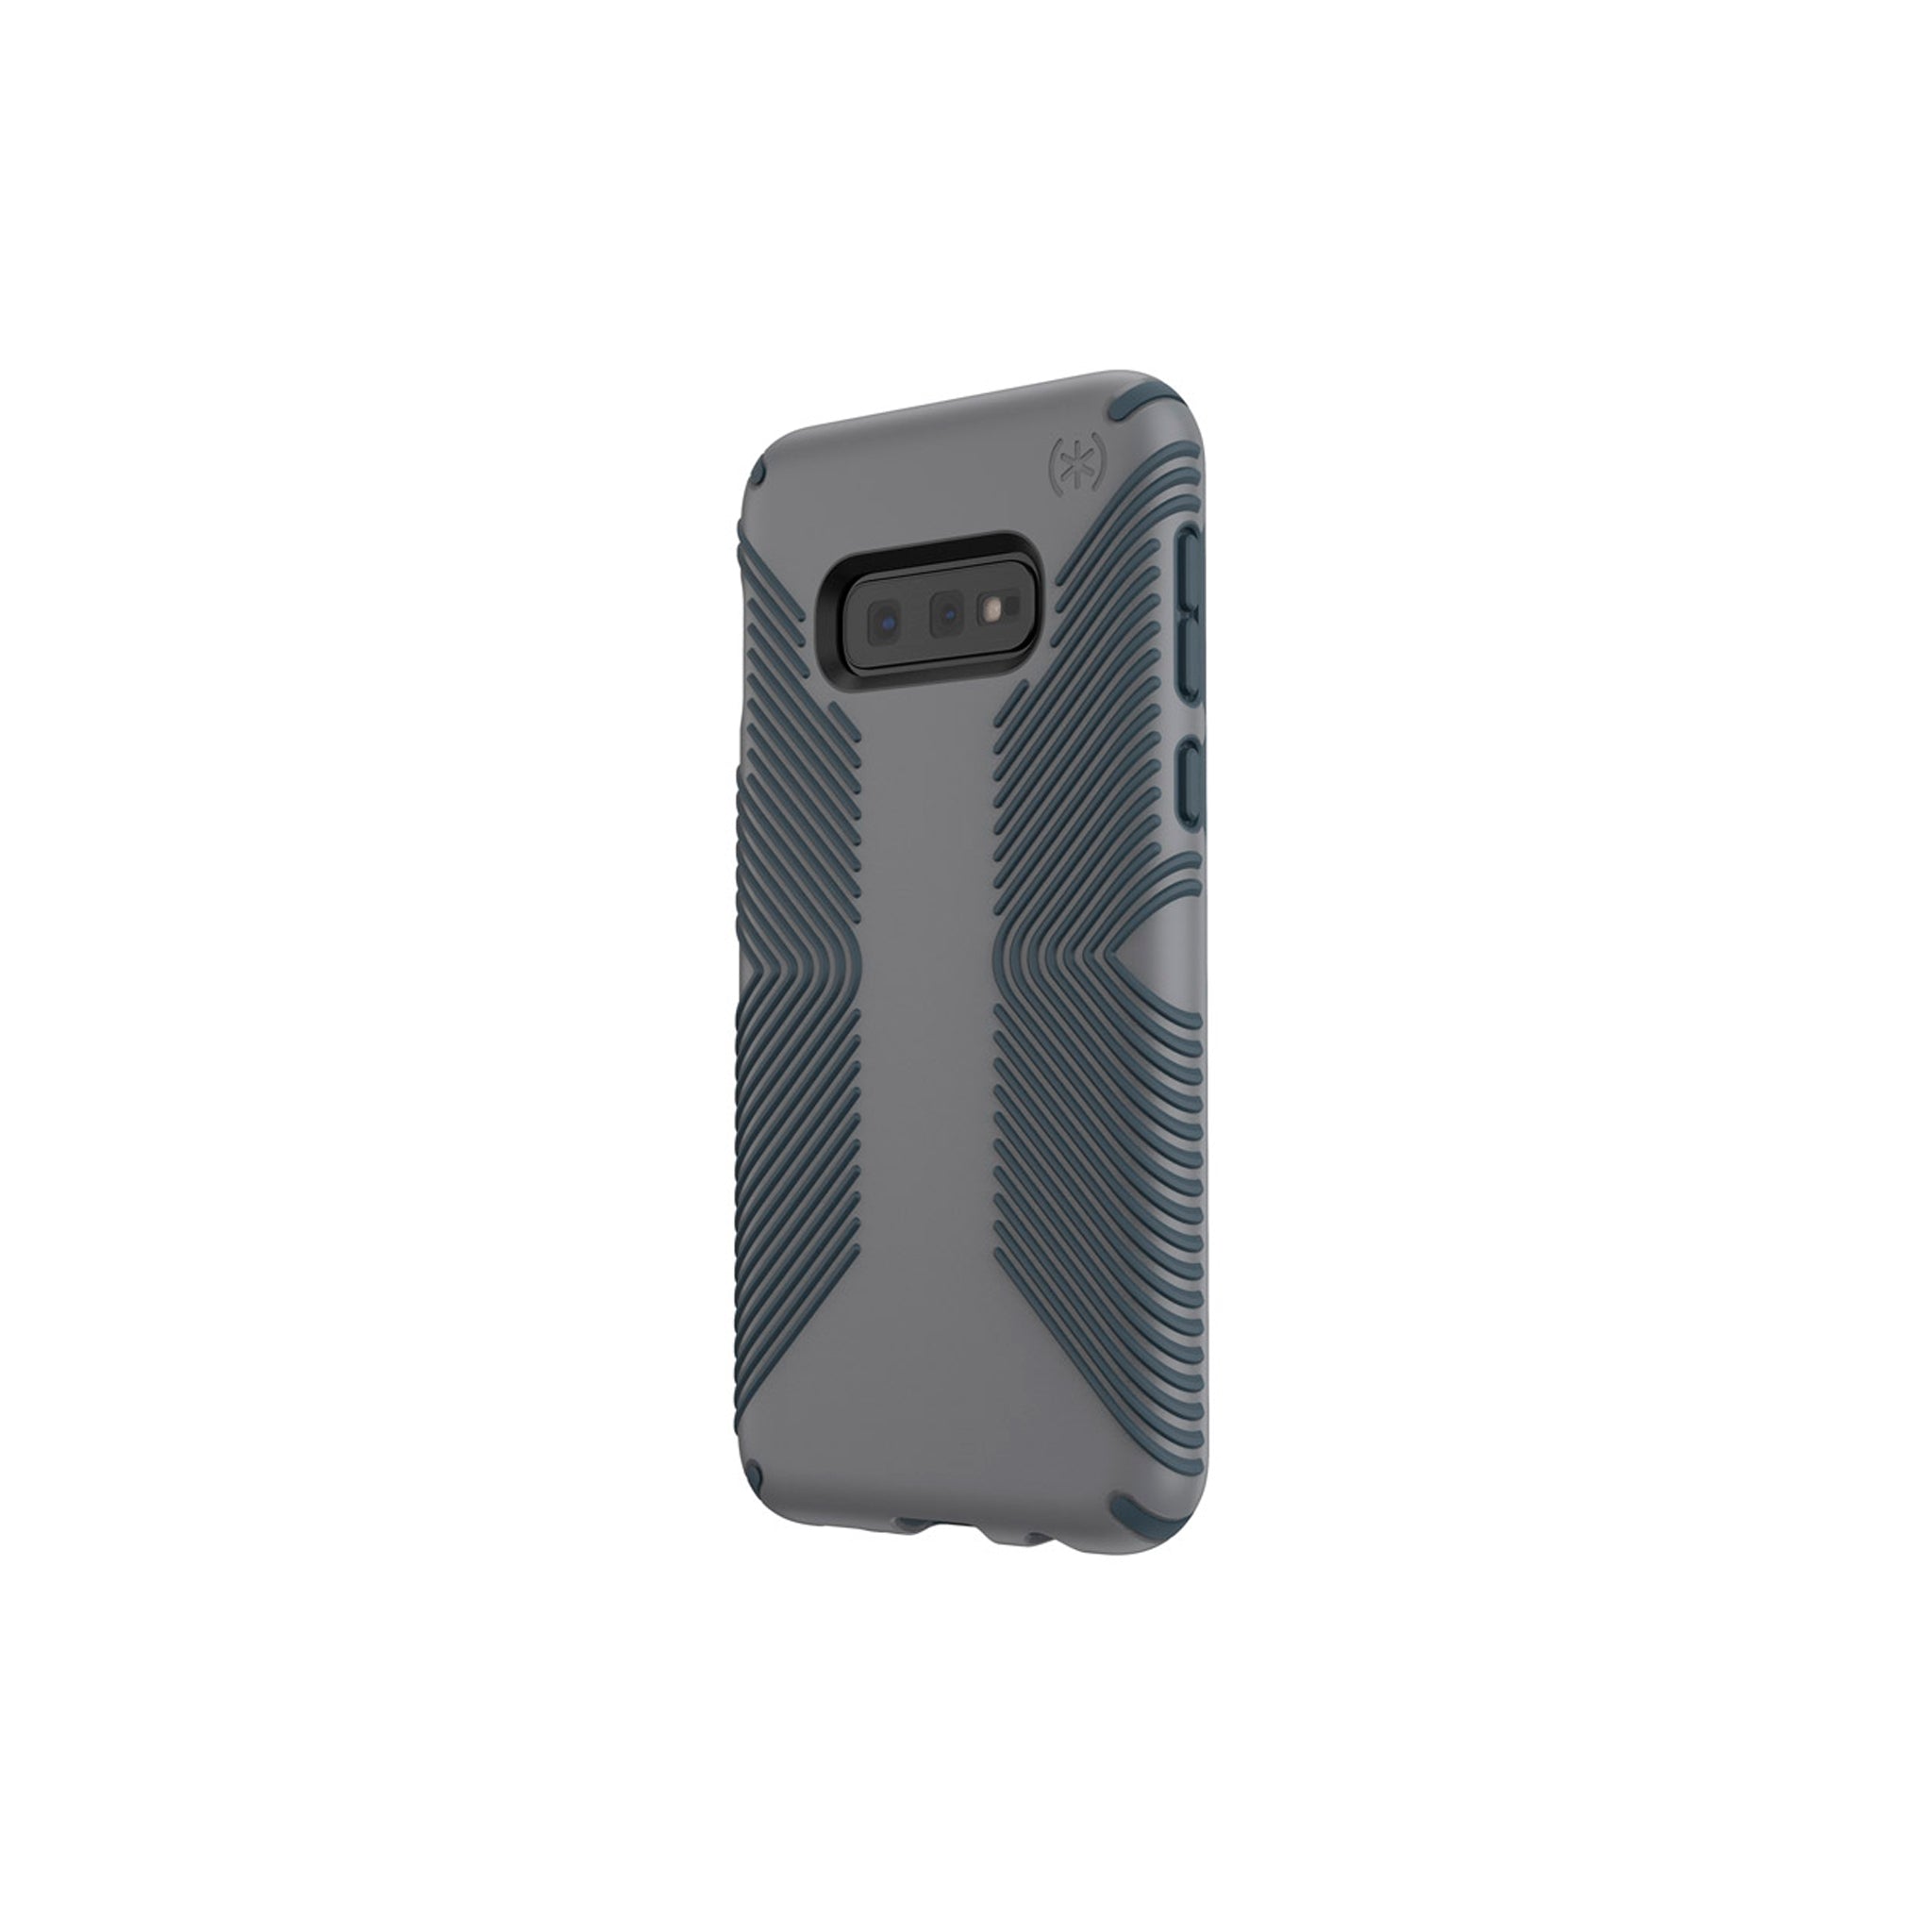 Speck - Presidio Grip Case For Samsung Galaxy S10e - Graphite Gray And Charcoal Gray